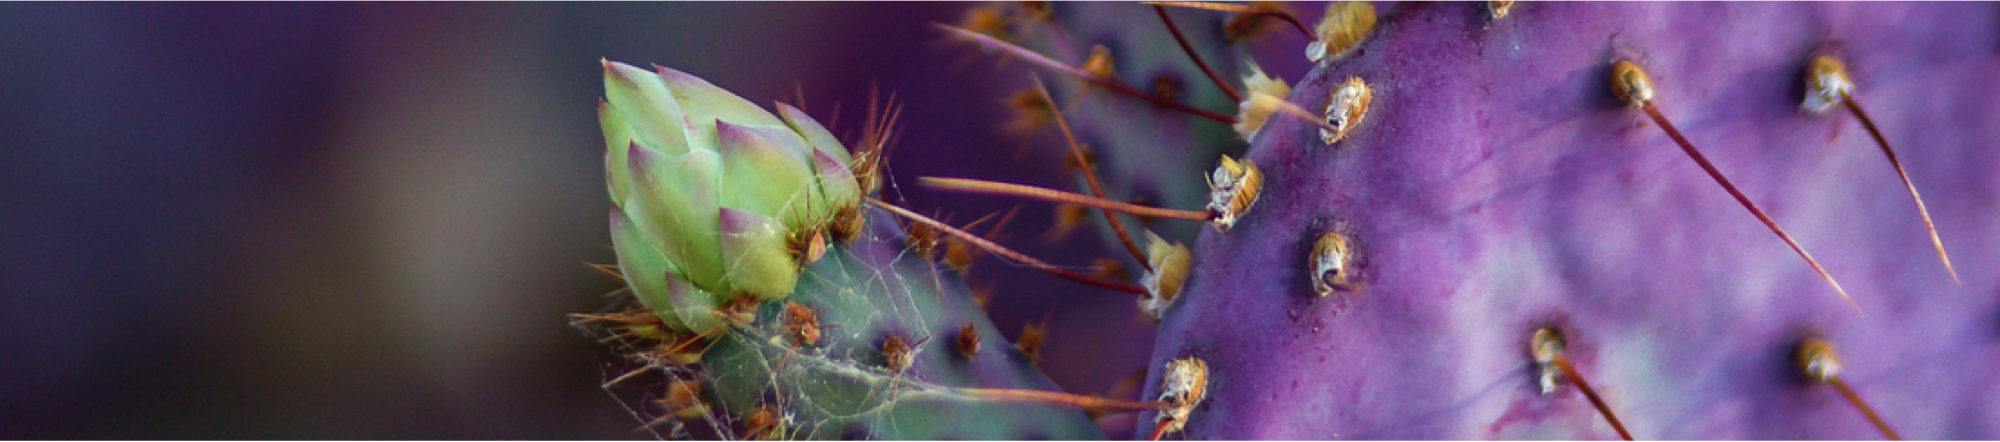 purple cactus close up